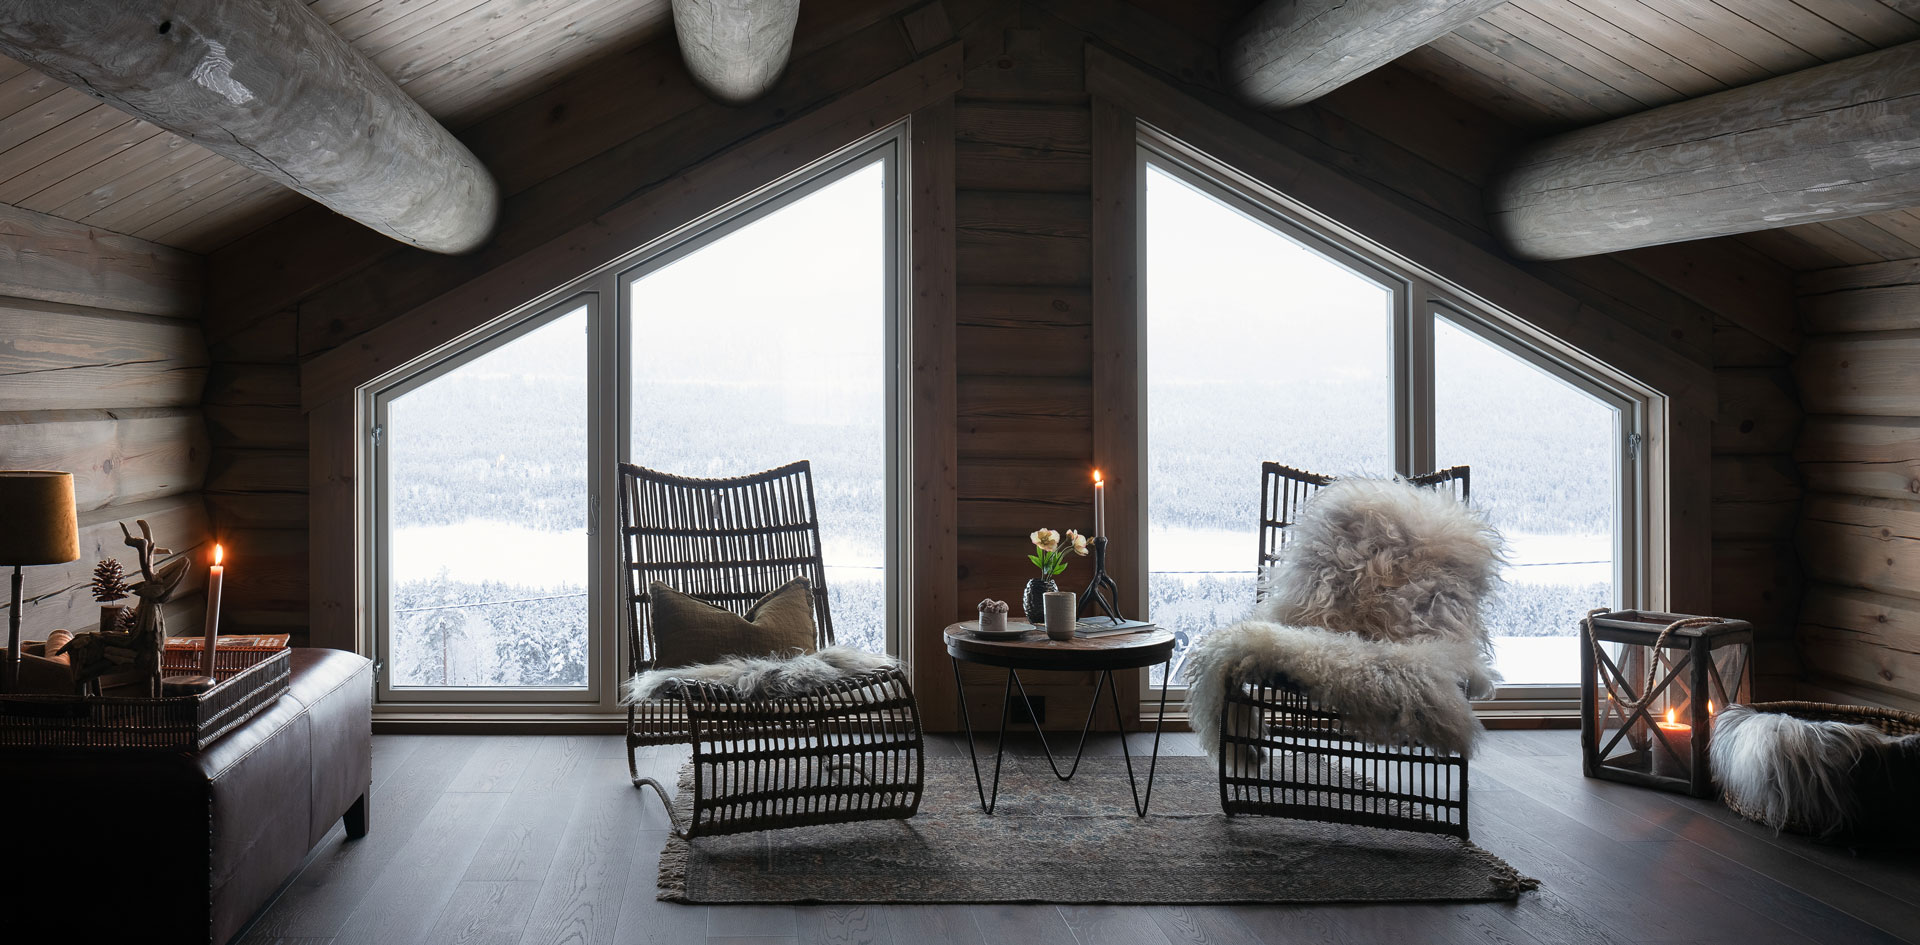 Interiør bilde av loftstue i fjellhytte, bygget av Geilo Laft AS. Koselig stemning med saueskinn, stearinlys og snødekket skog utenfor vinduet.